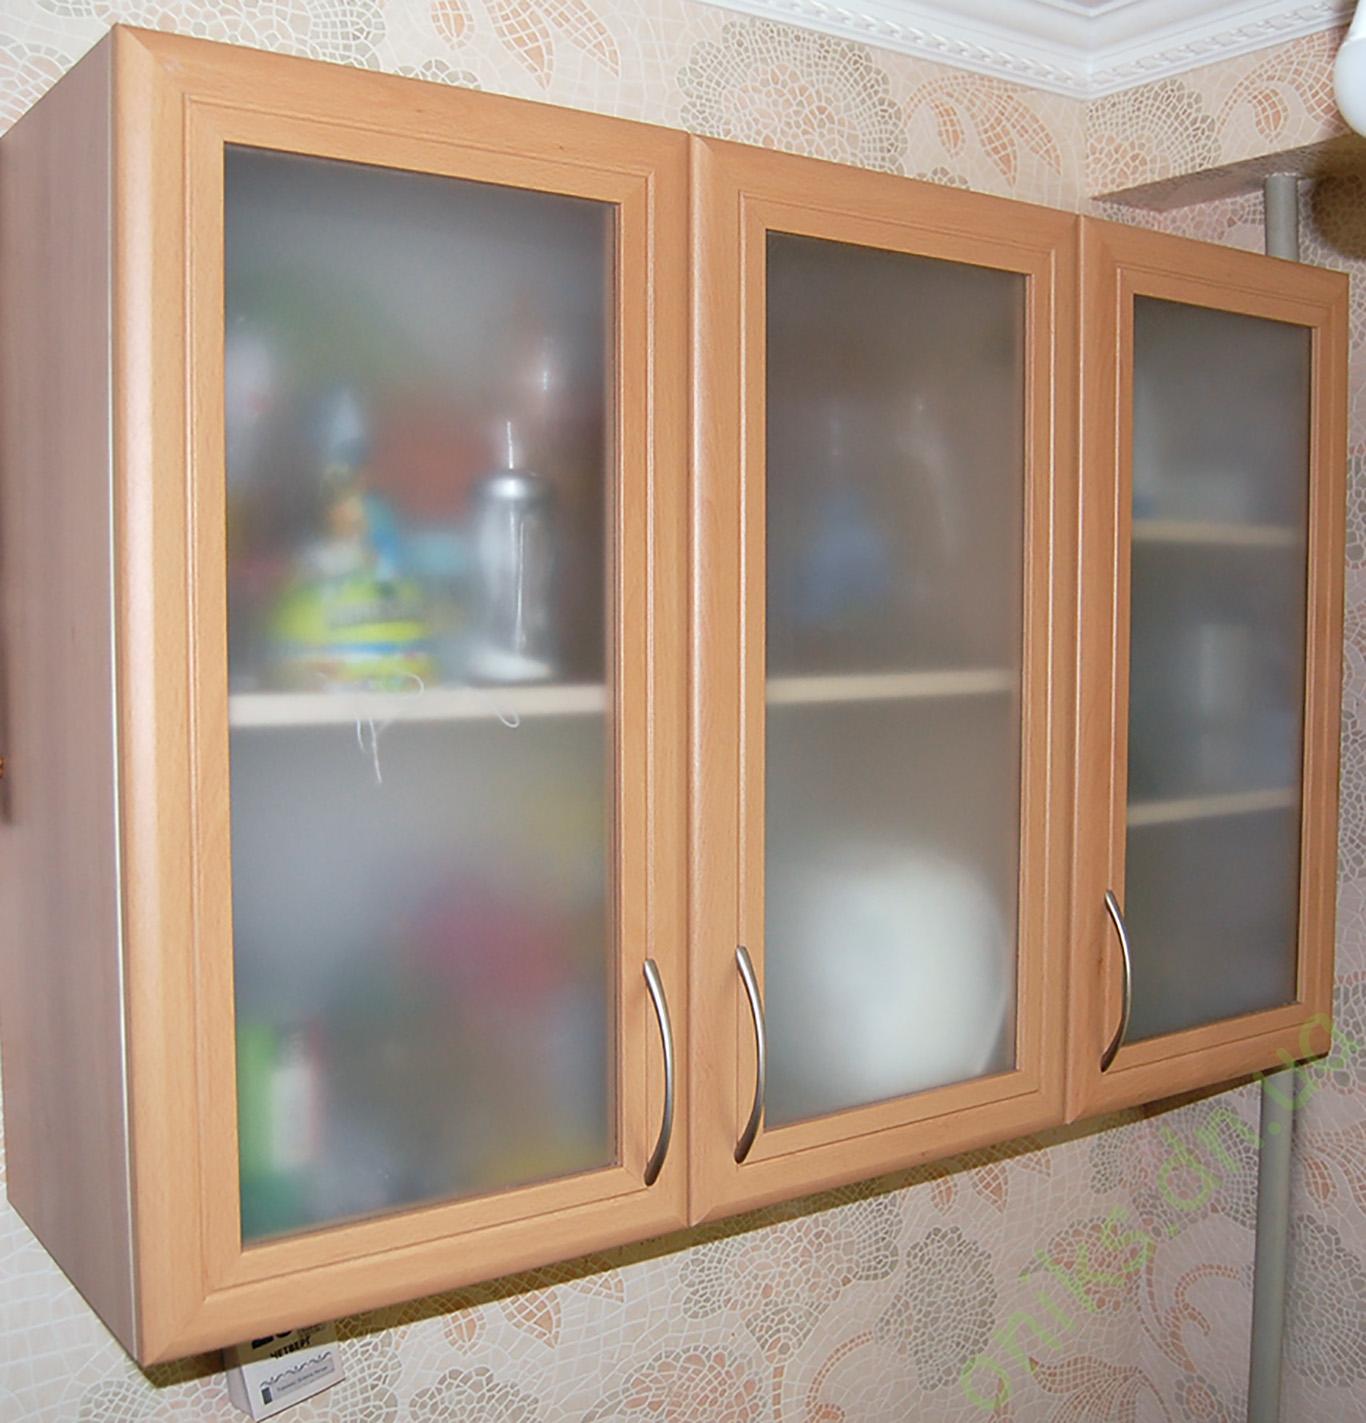 Купить кухонные шкафы бу. Кухонные навесные шкафы с матовым стеклом. Шкаф навесной для кухни со стеклом матовым. Кухонный трехдверный шкаф. Кухонный модуль навесной со стеклом.